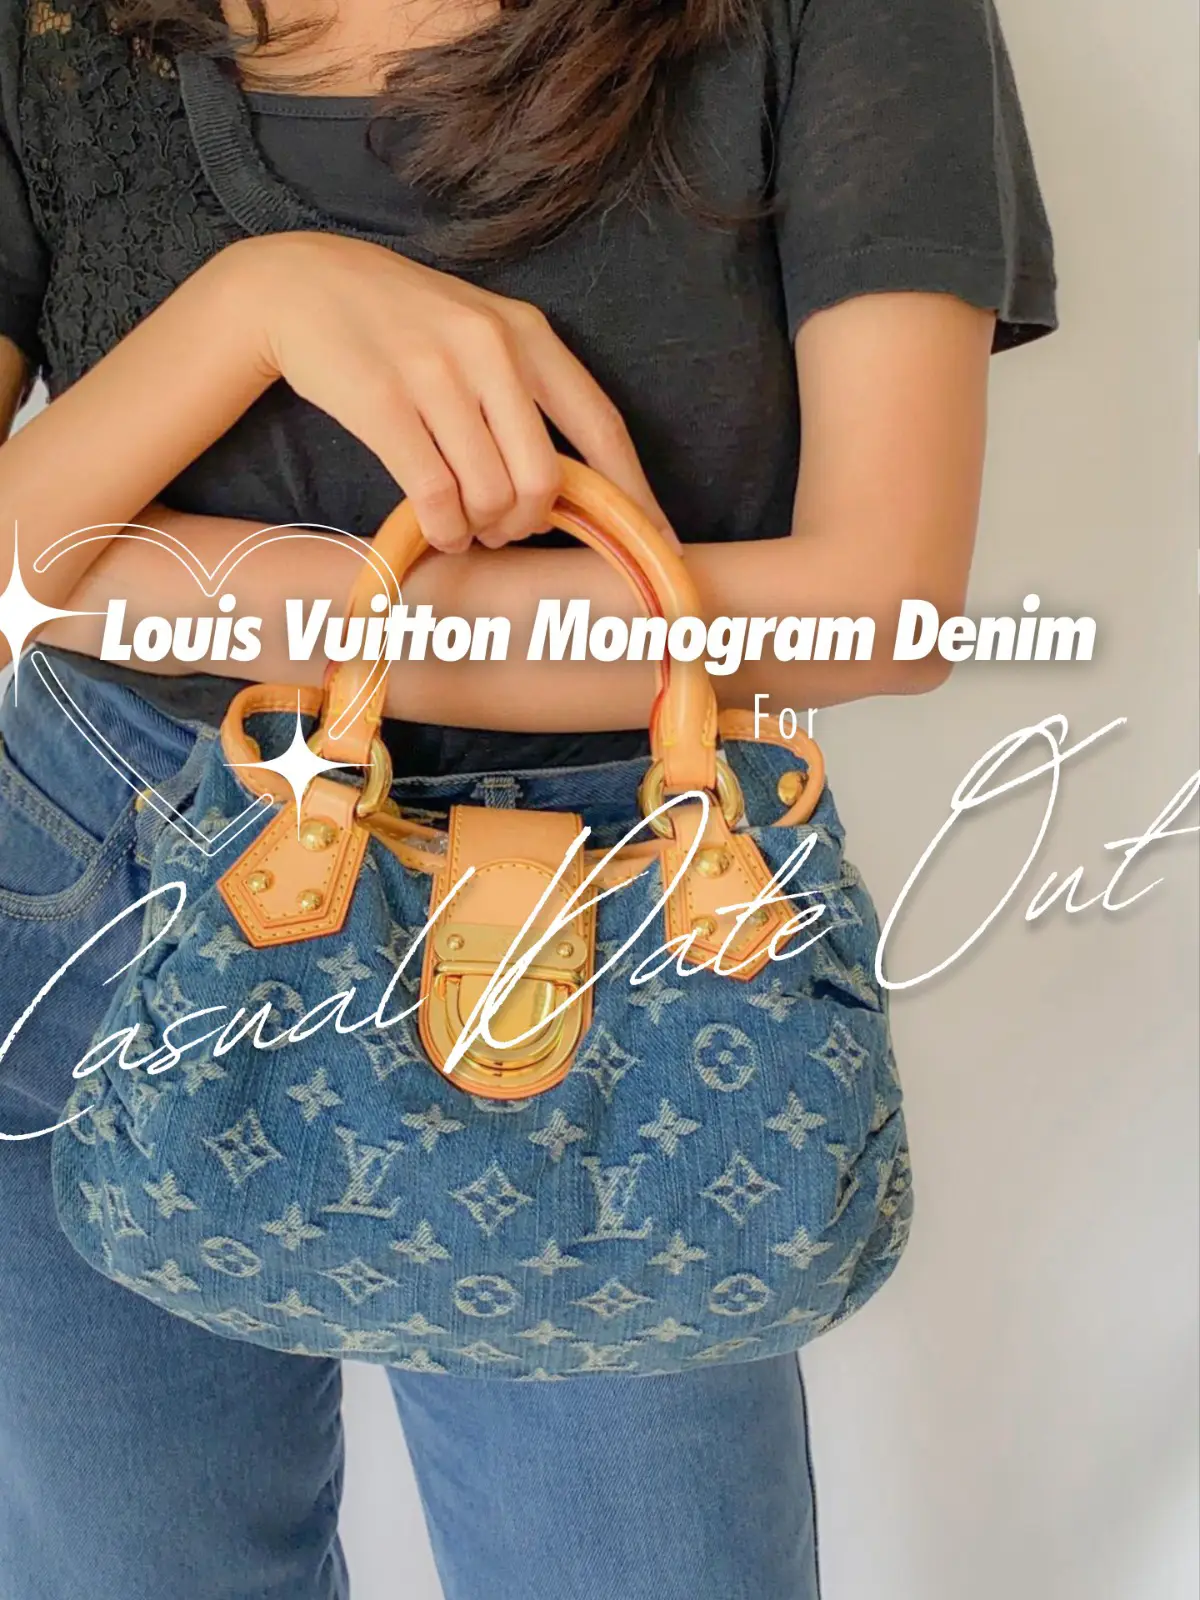 Louis Vuitton Monogram Denim for Casual Date!